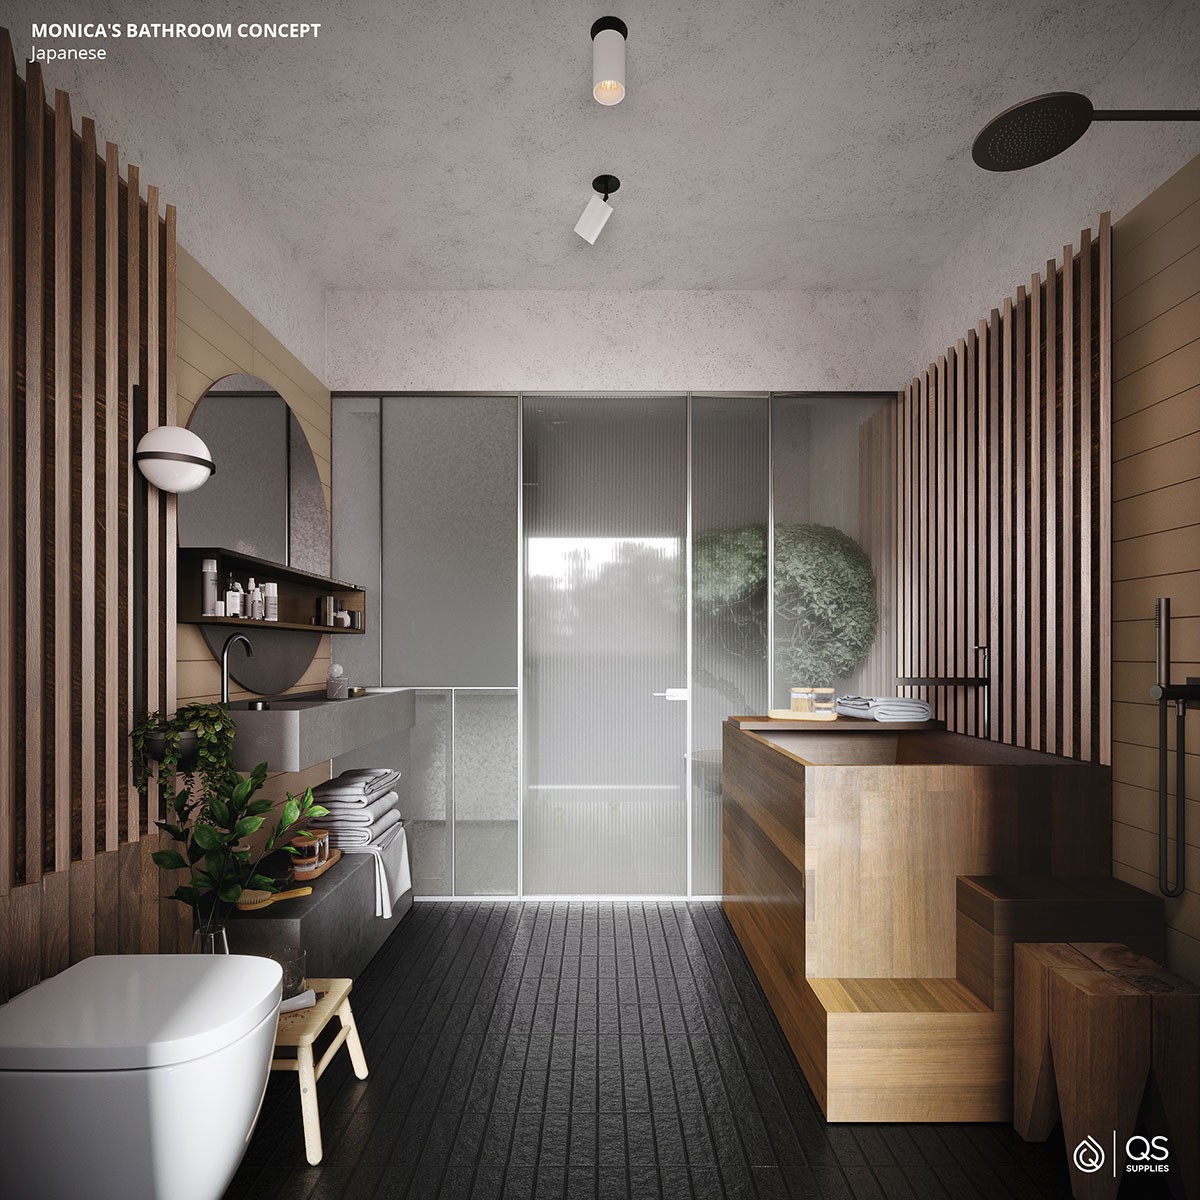 banheiro com piso de madeira preto, parede revestida de madeira marrom, banheira d emadeira, pia cinza, espelho redondo.